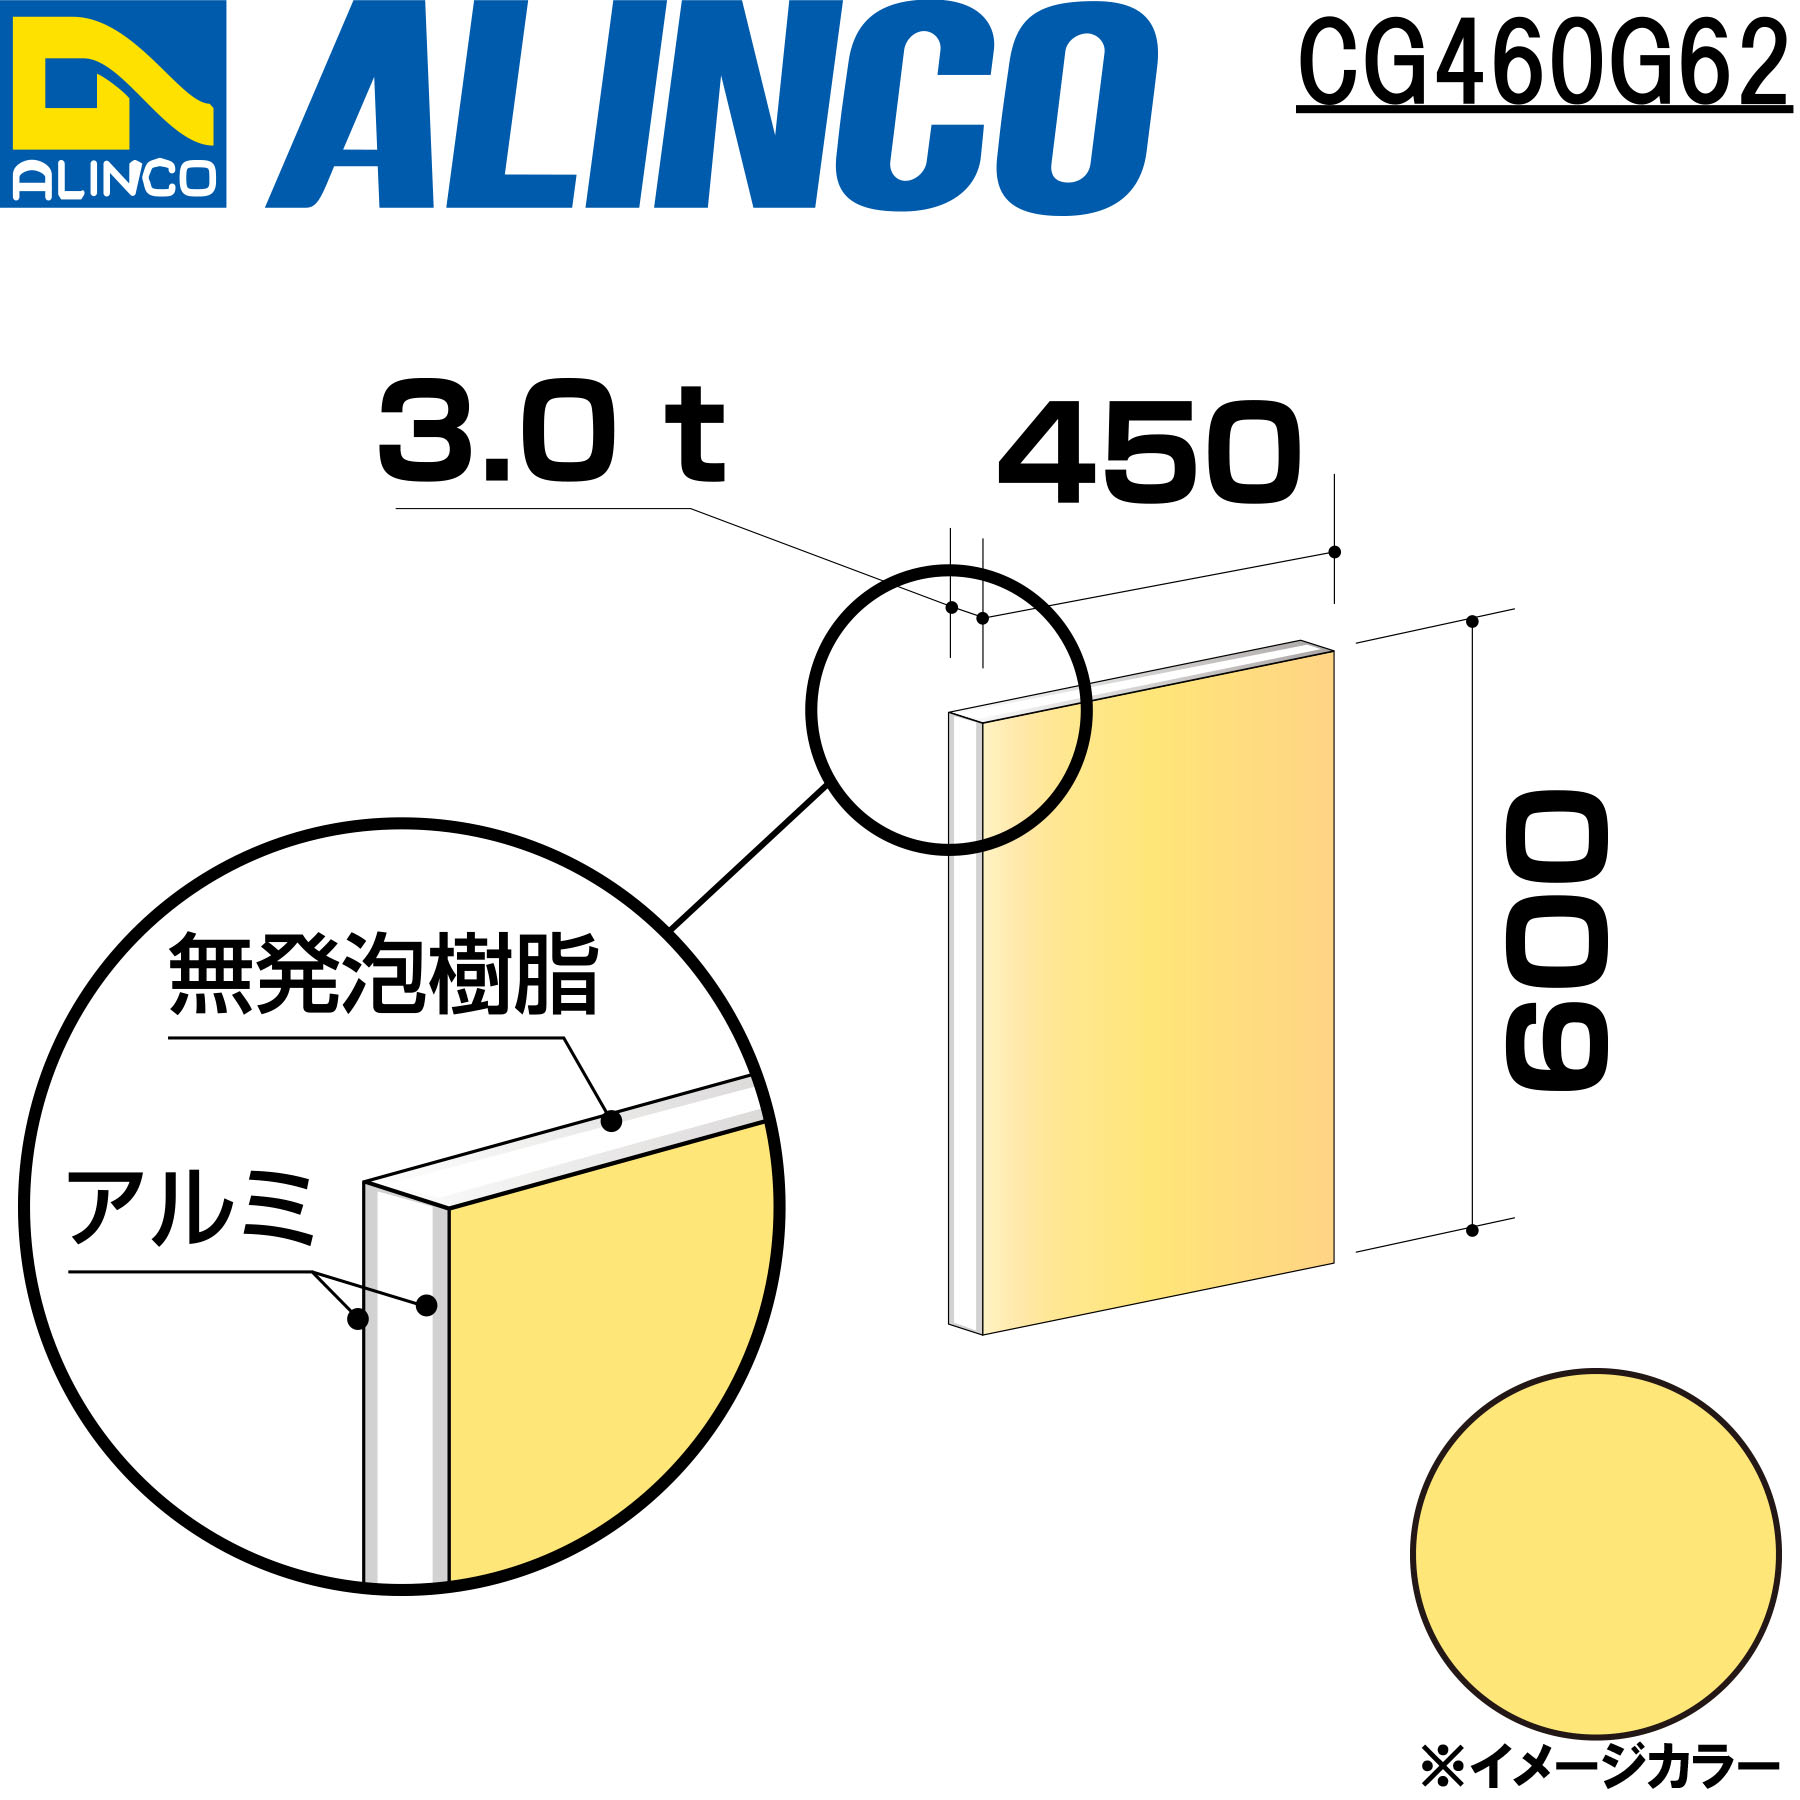 アルミ型材検索|アルインコ株式会社(ALINCO)